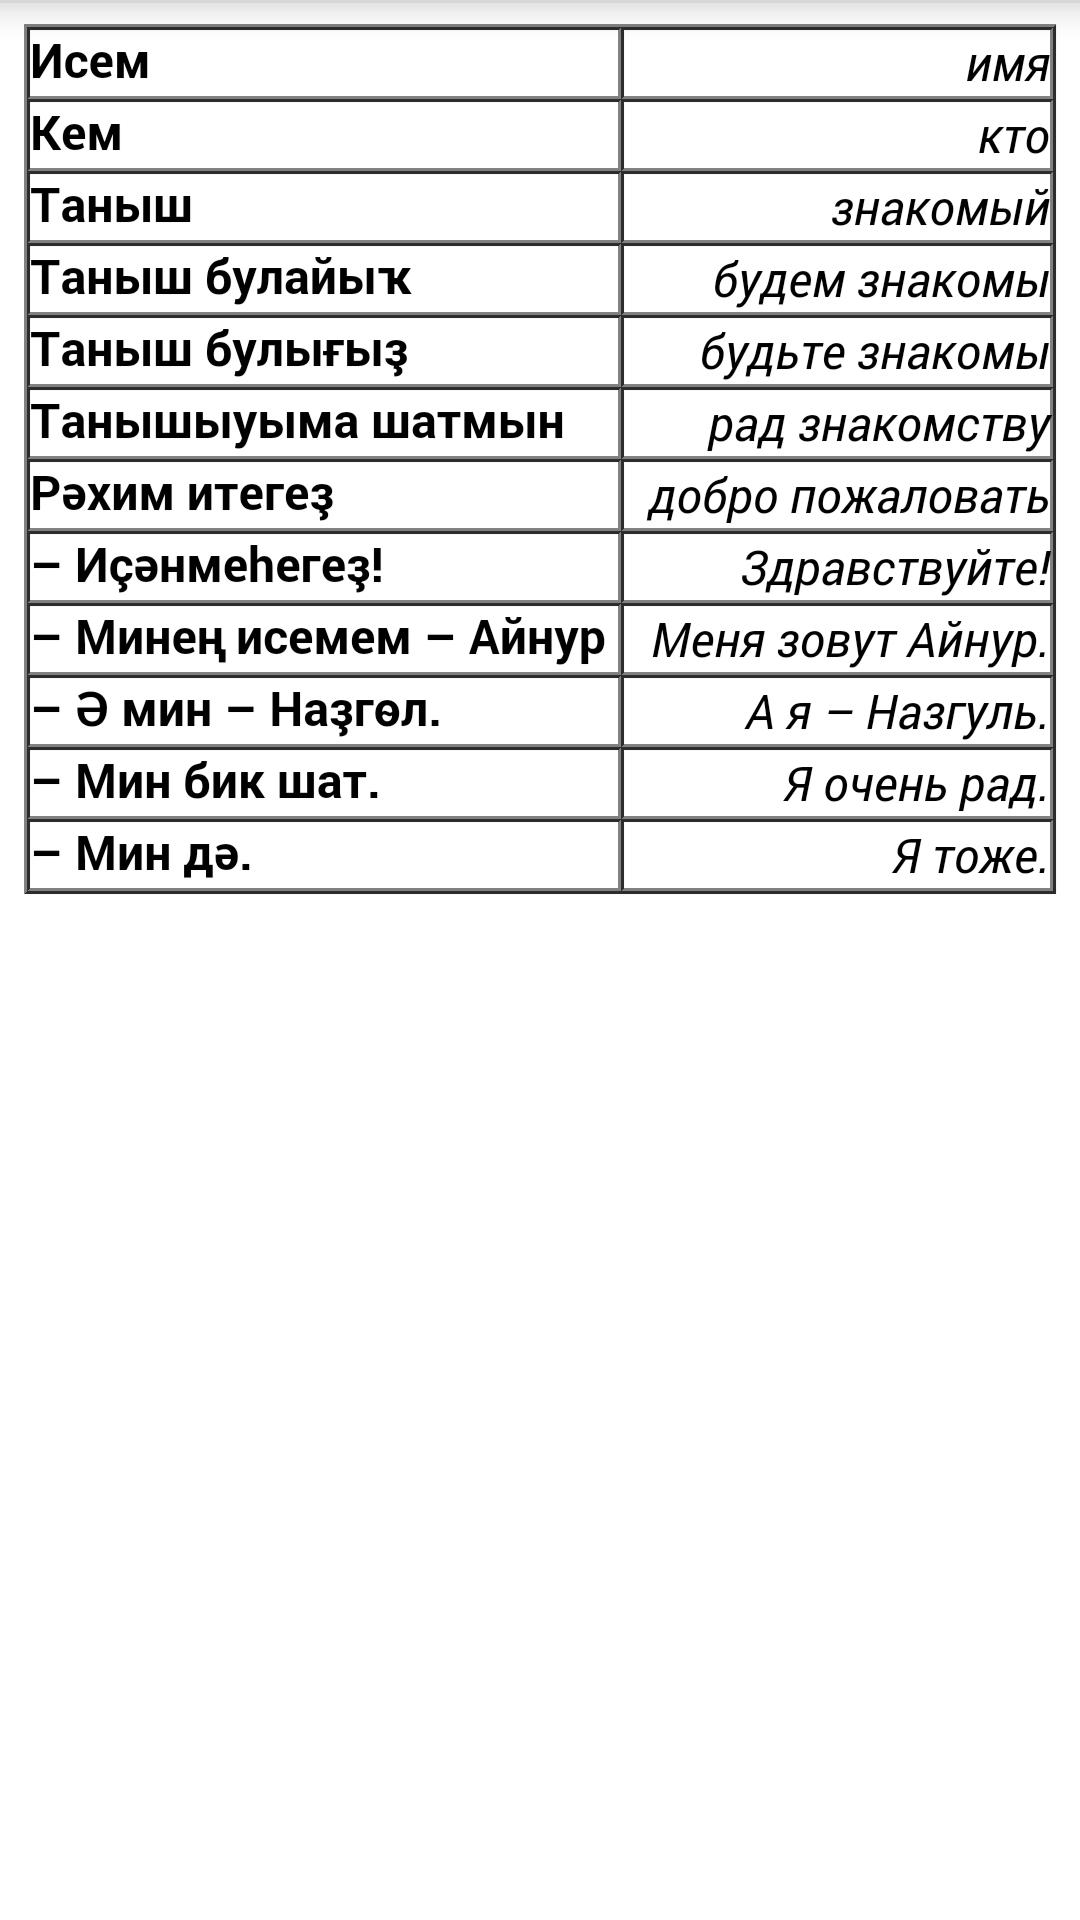 Правильный перевод русскую на башкирский